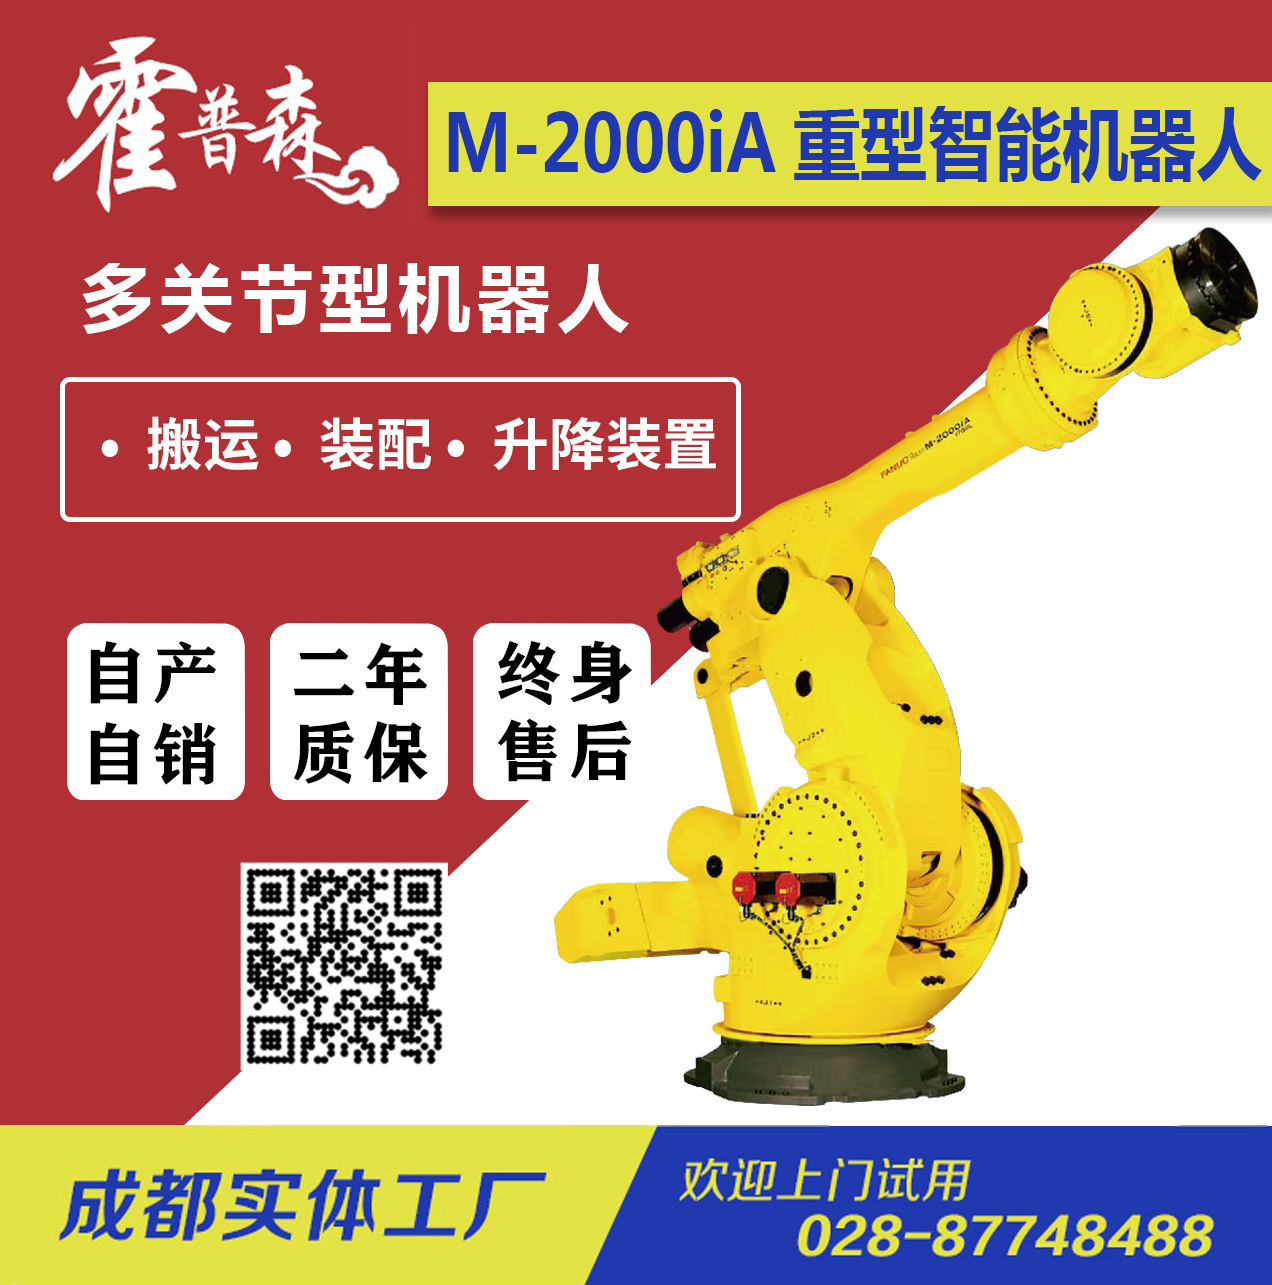 FANUC-Robot M-2000iA/重物搬运/升降装置大型机器人